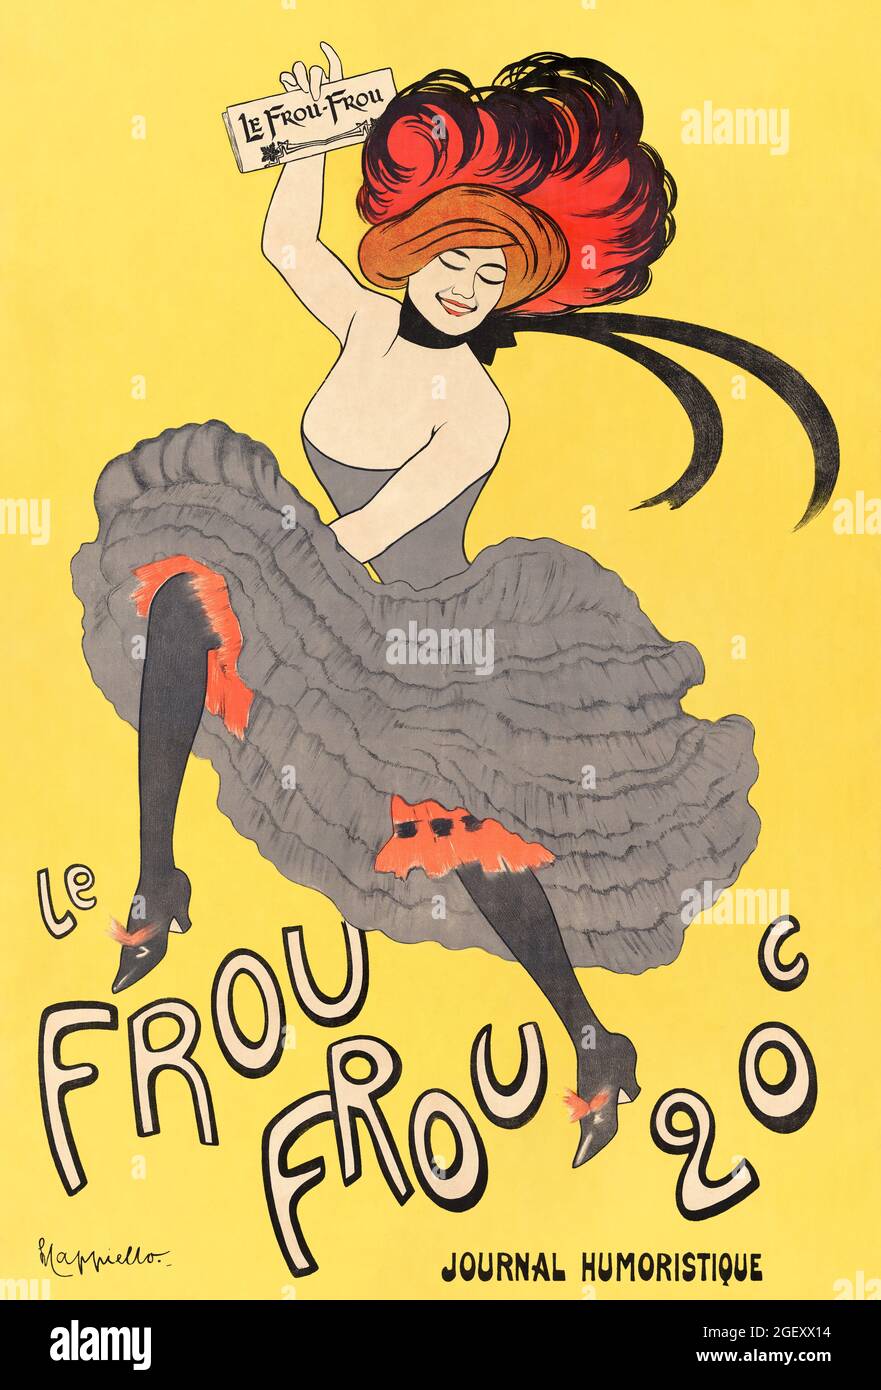 Le Frou Frou – rivista humoristique (1899) stampa in alta risoluzione di Leonetto Cappiello. Art Nouveau. Foto Stock